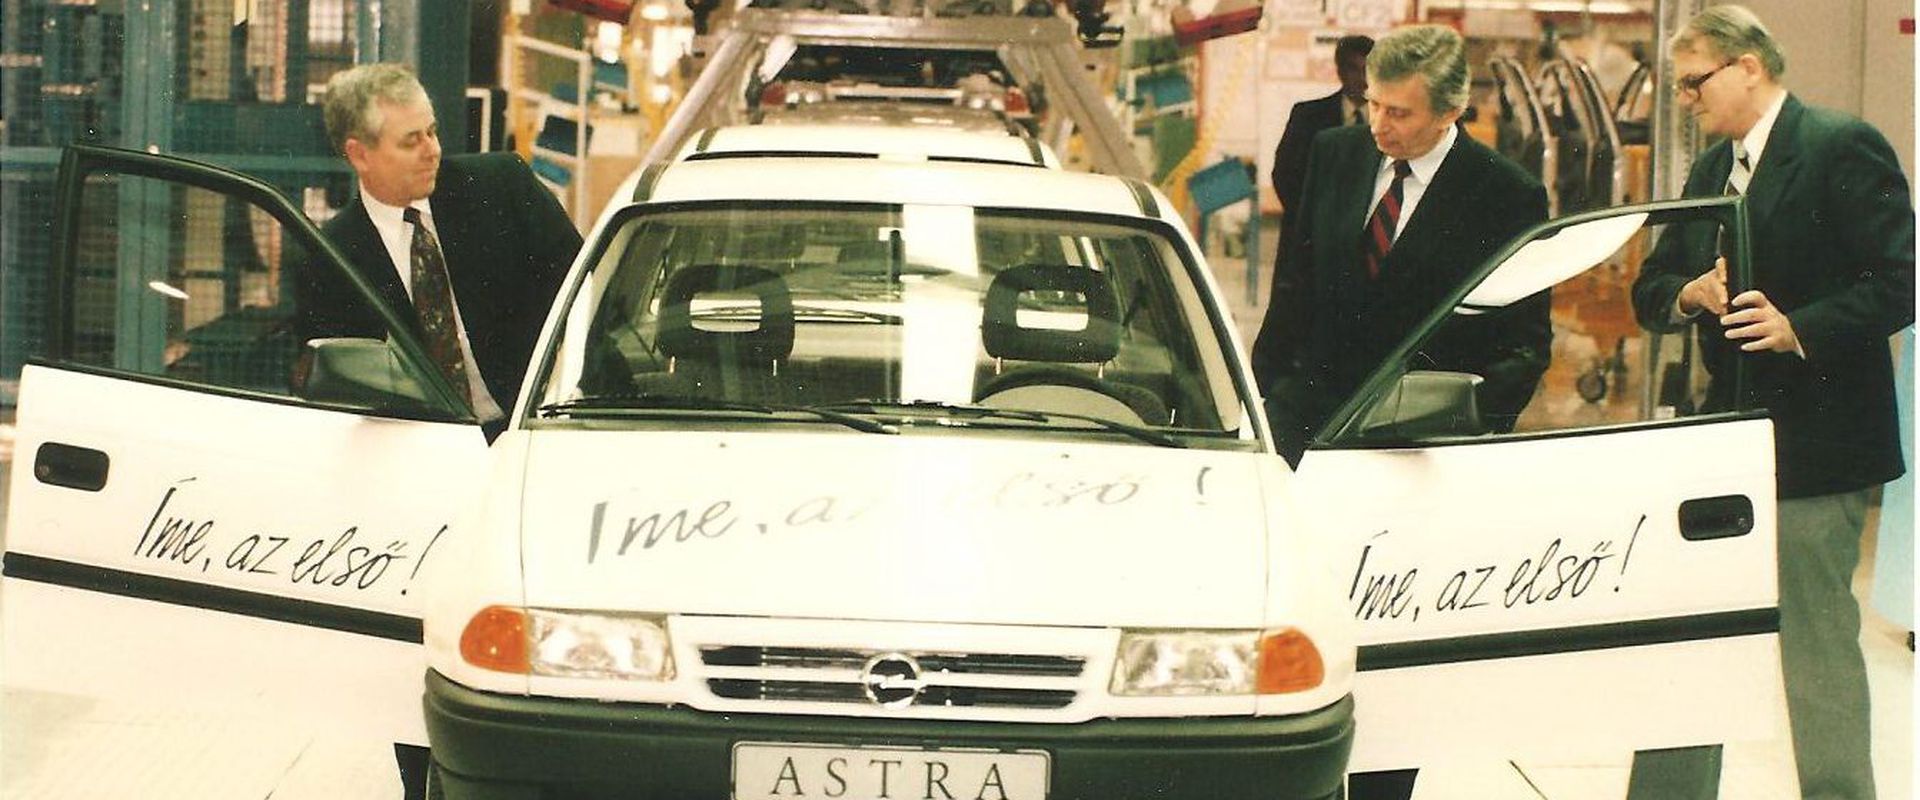 30 éves az első magyar személyautó, az első Opel Astra